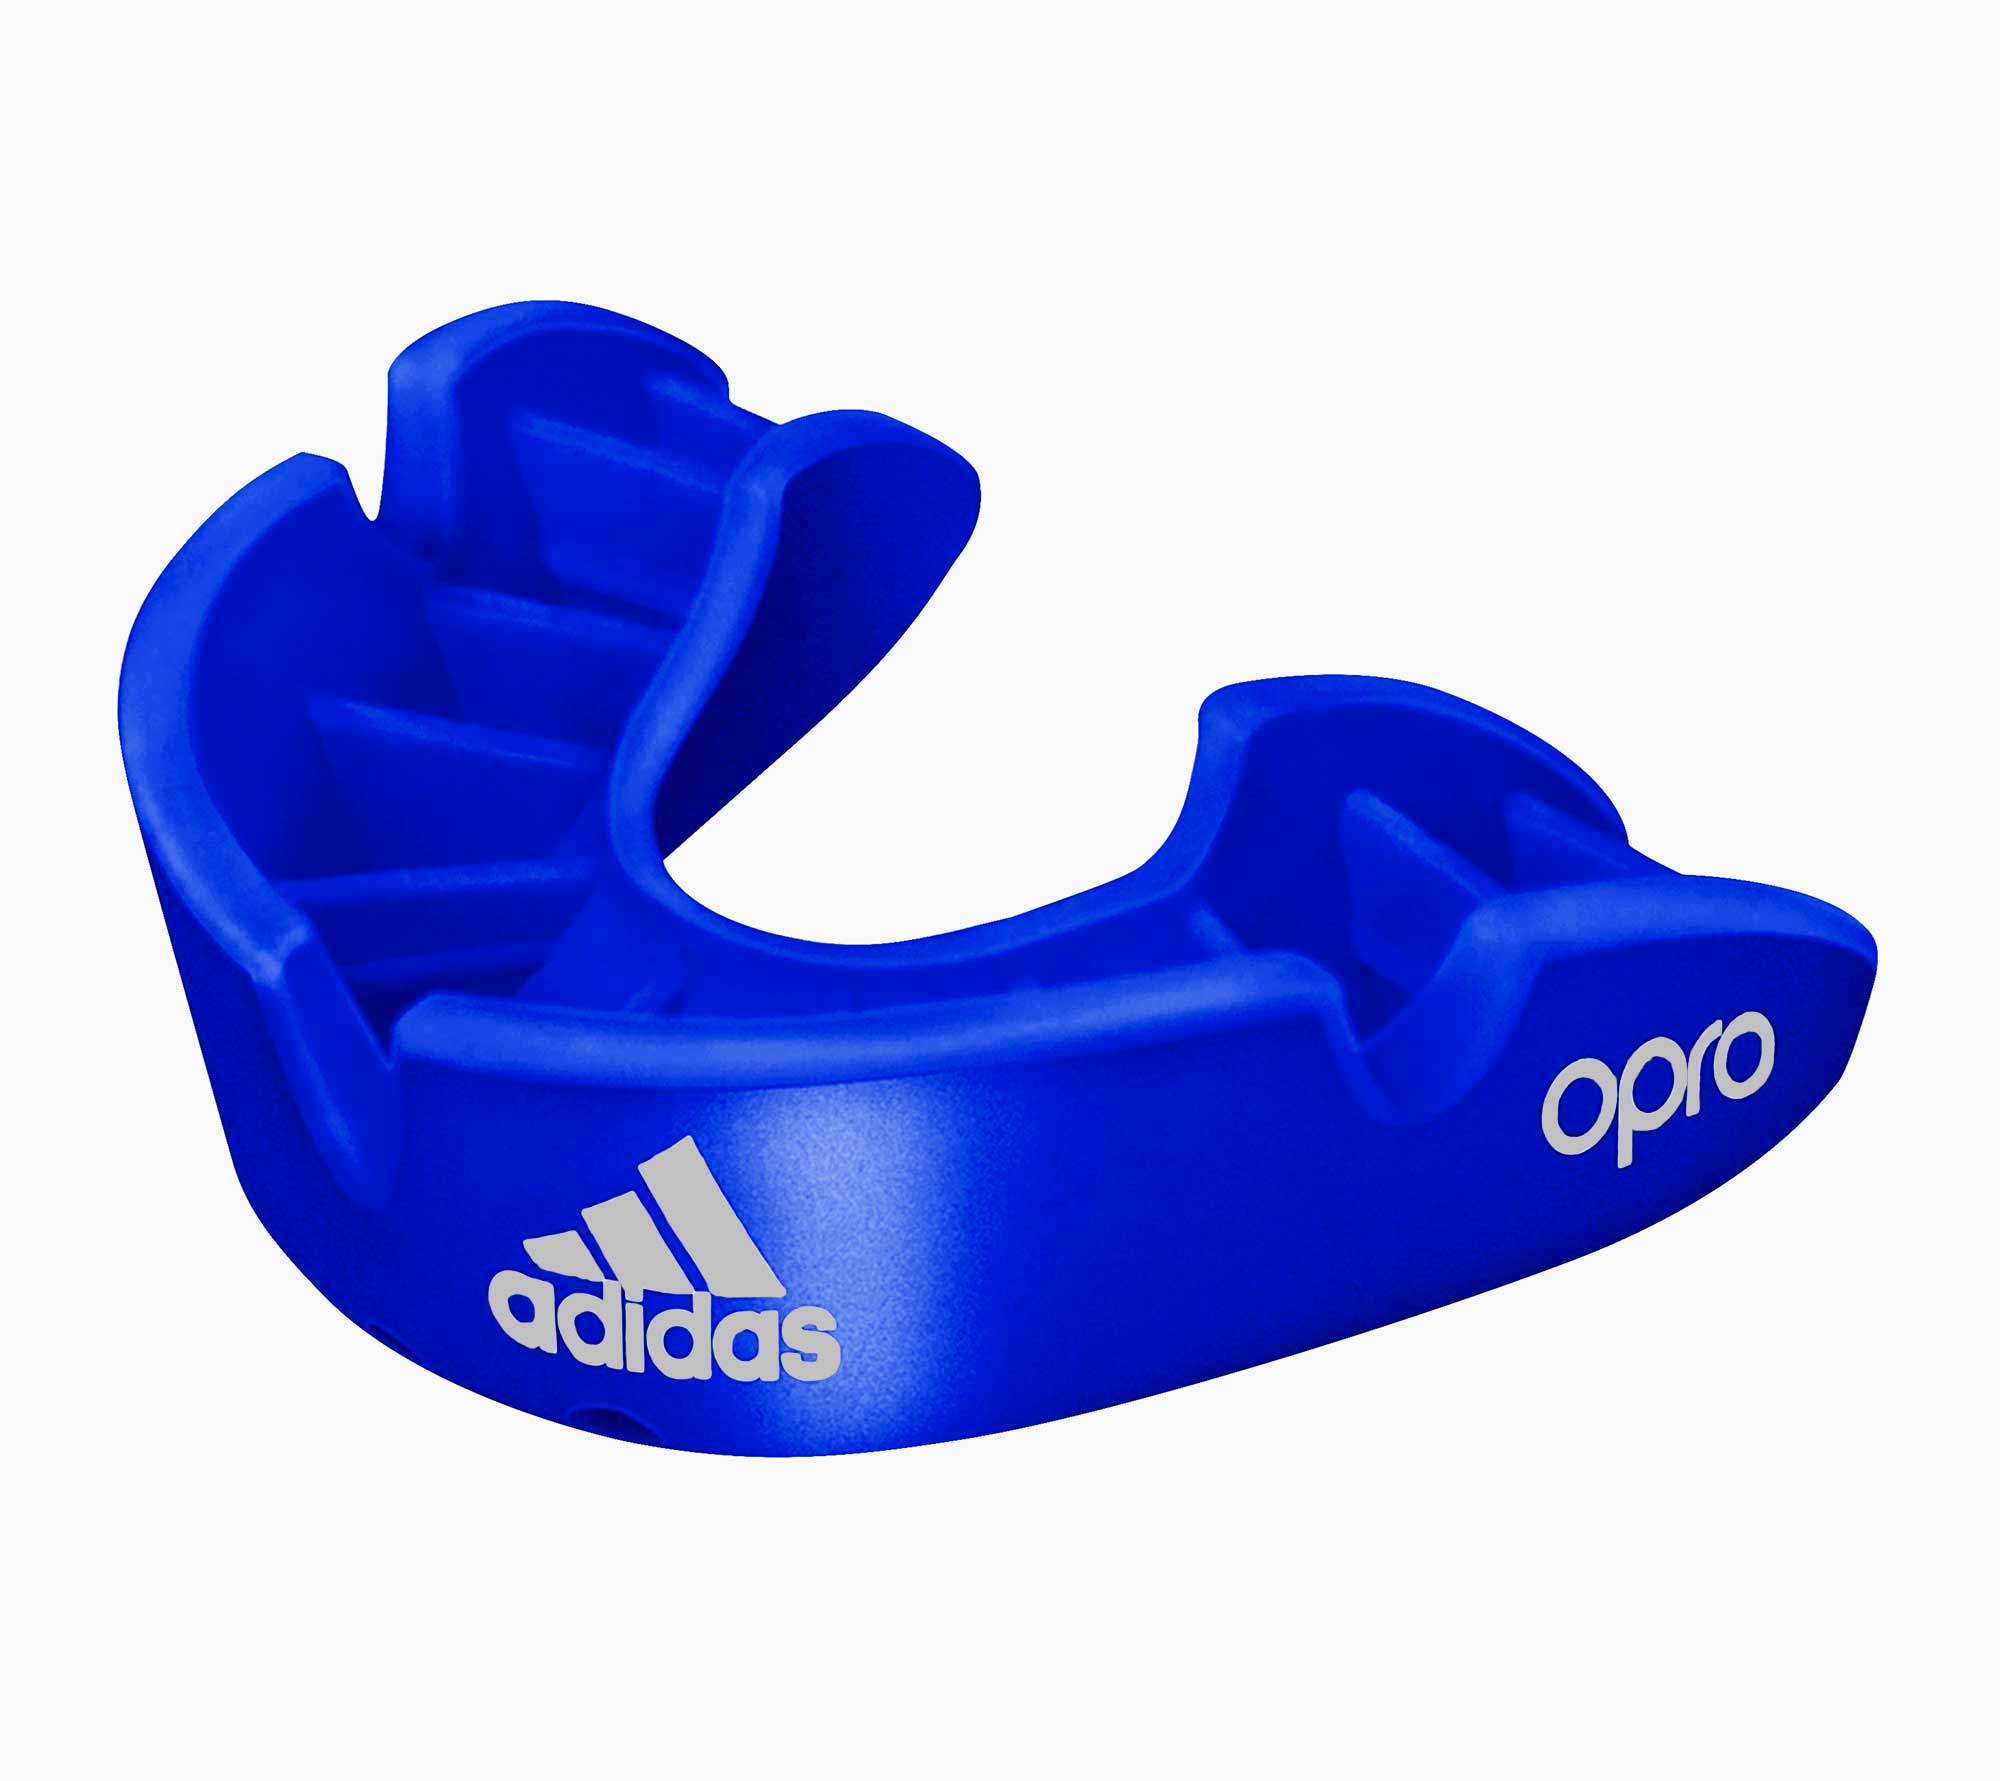 Капа одночелюстная Adidas adiBP31 Opro Bronze Gen4 Self-Fit Mouthguard синяя 2000_1781